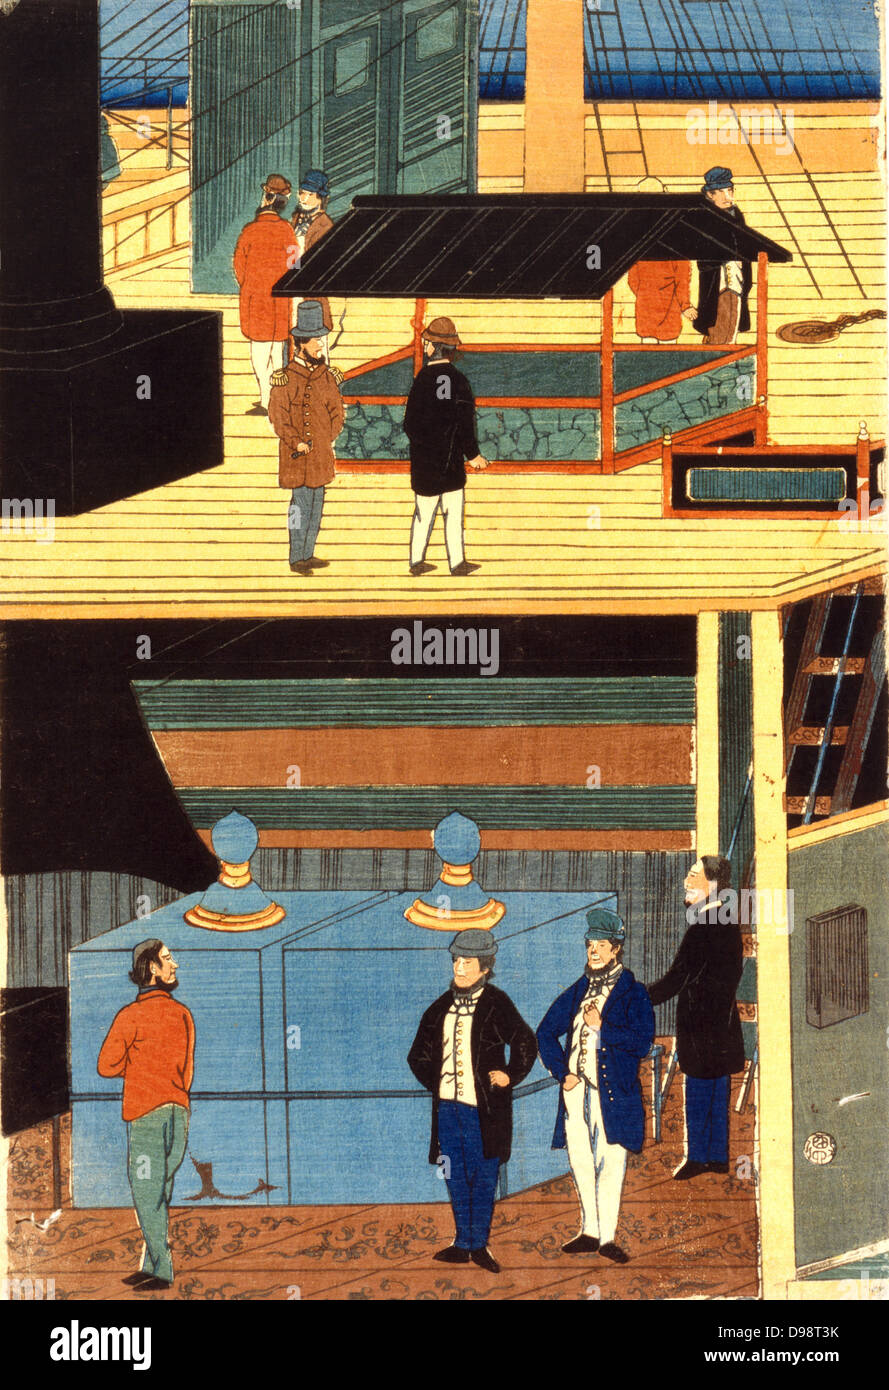 Coupe transversale d'un navire européen montrant des hommes en costume européen sur le pont, en haut, et les hommes sur le pont inférieur : Yokahama, Japon, 1861. Utagawa Yoshikazu (active c1850-1870) artiste japonais. Commerce Merchant Banque D'Images